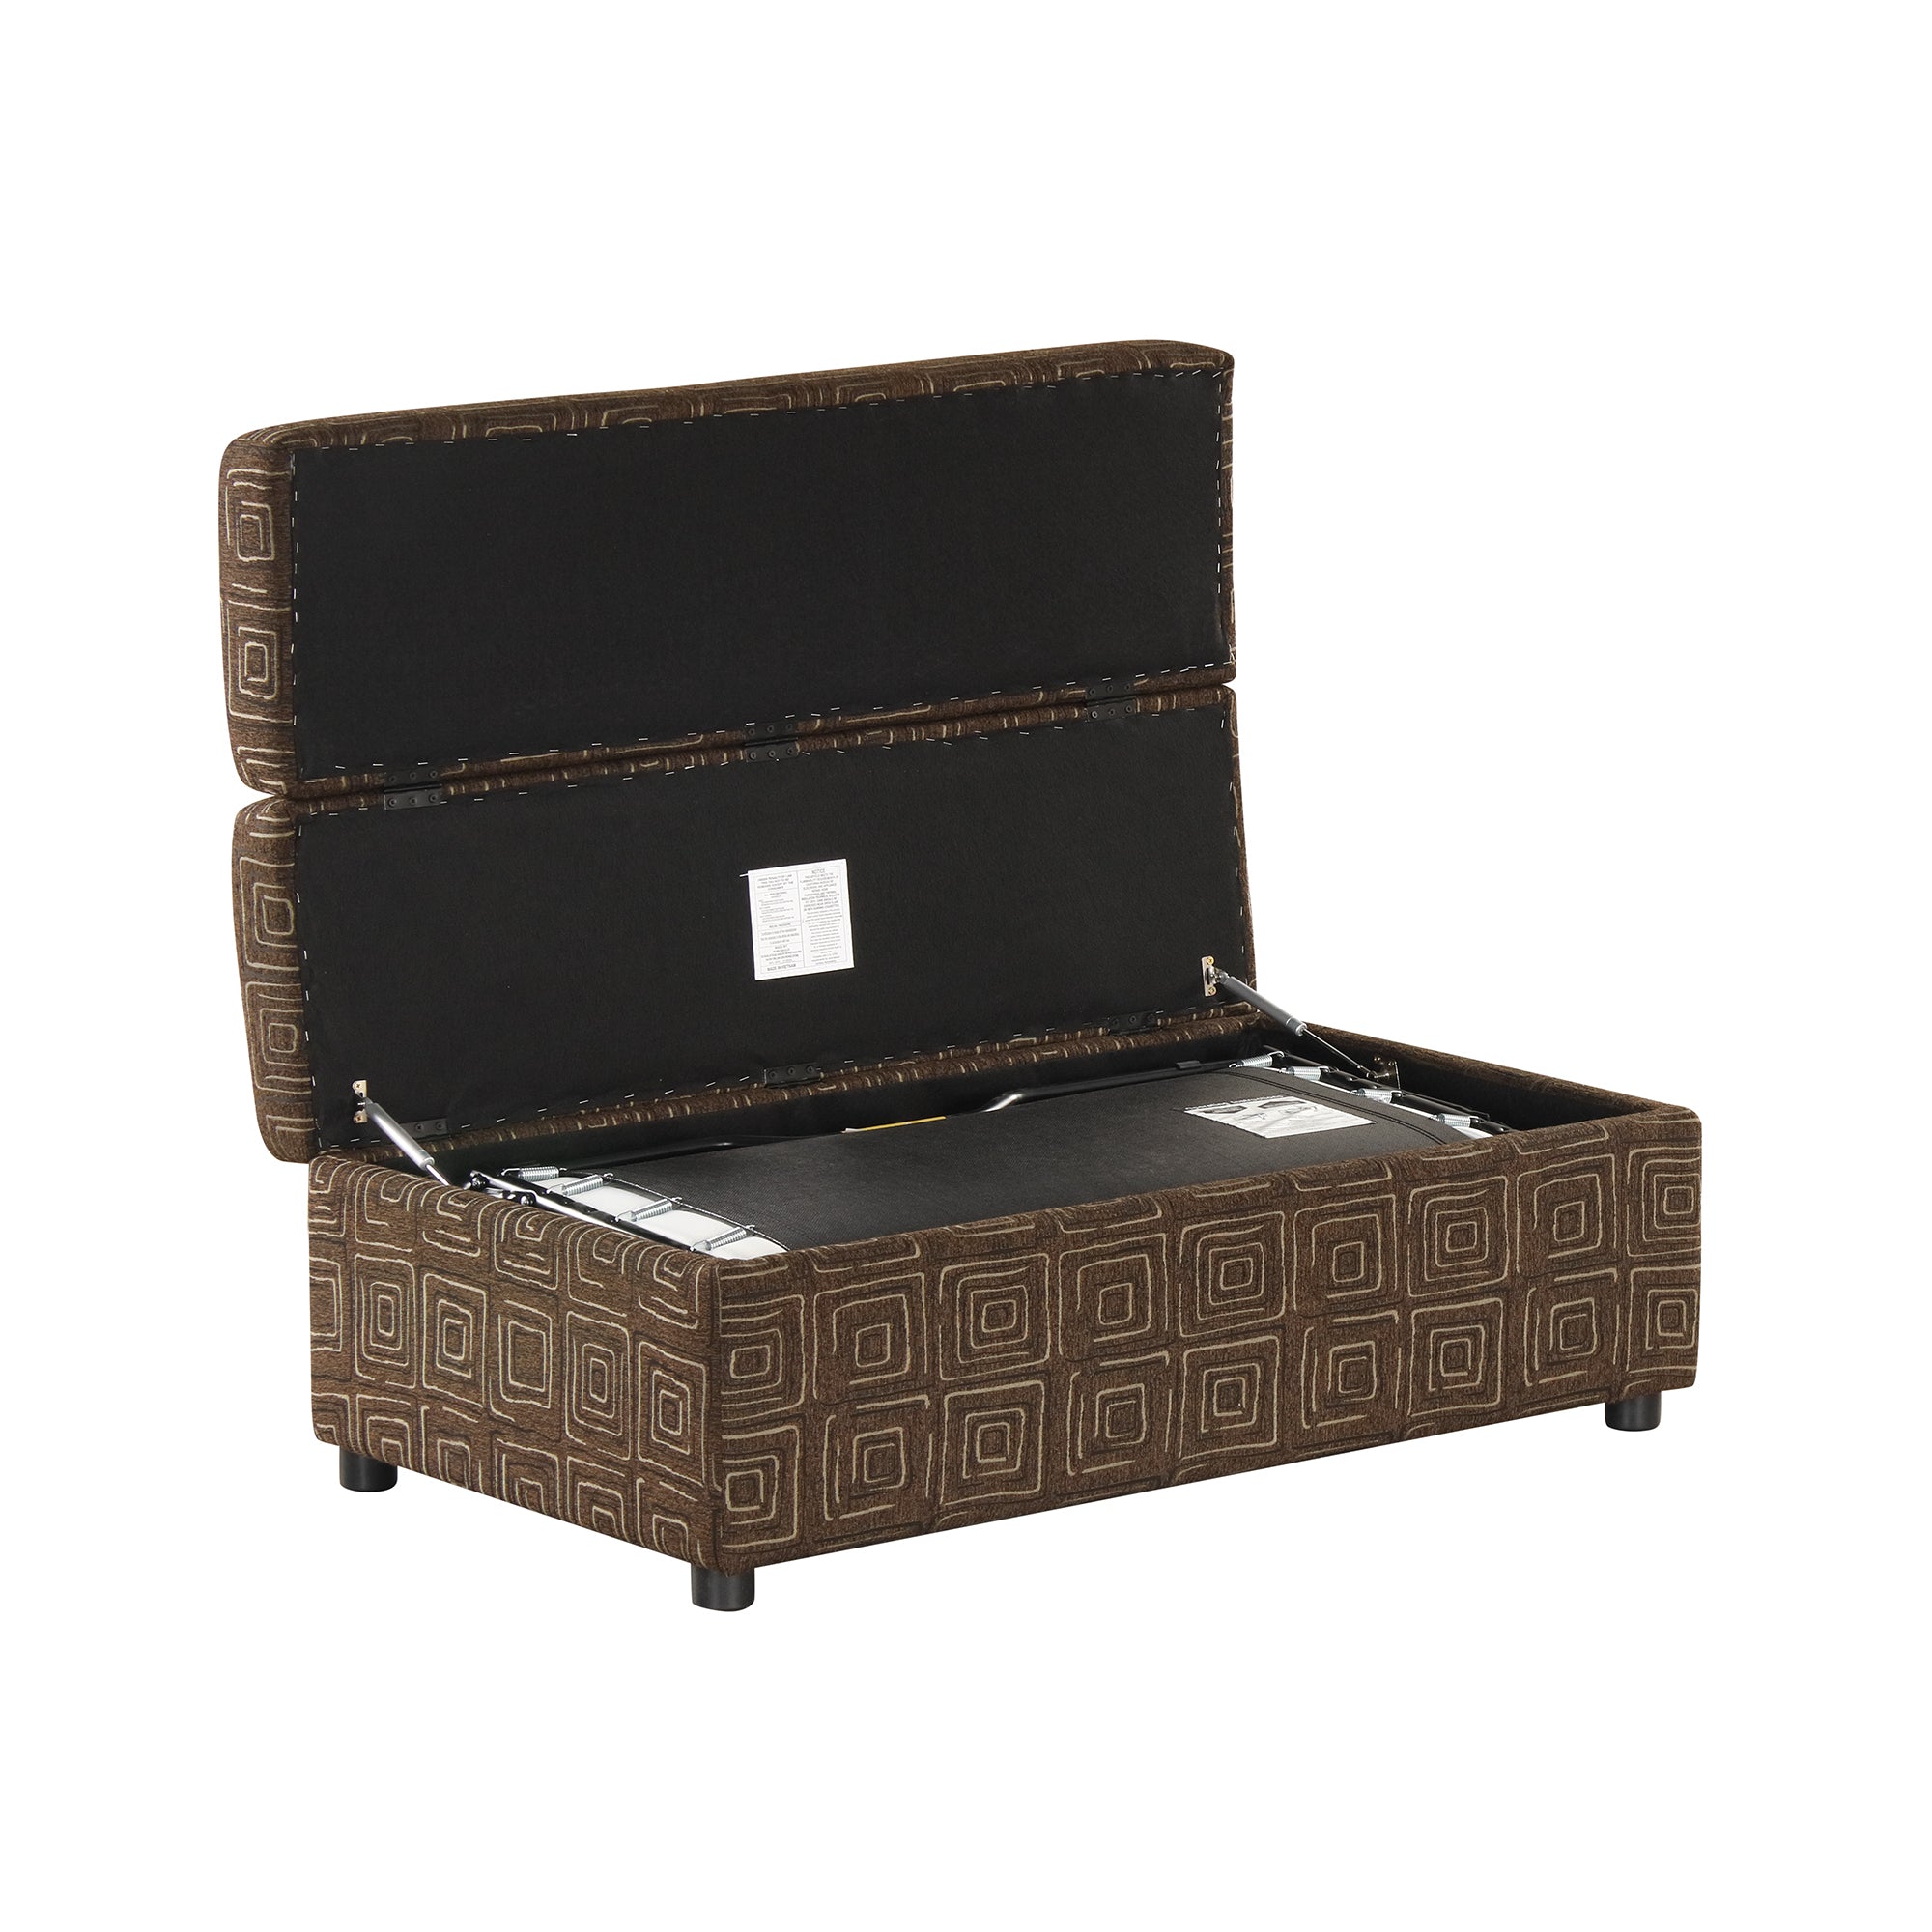 Twin Size Folding Ottoman Sleeper Bed with Mattress espresso-foam-linen-1 seat